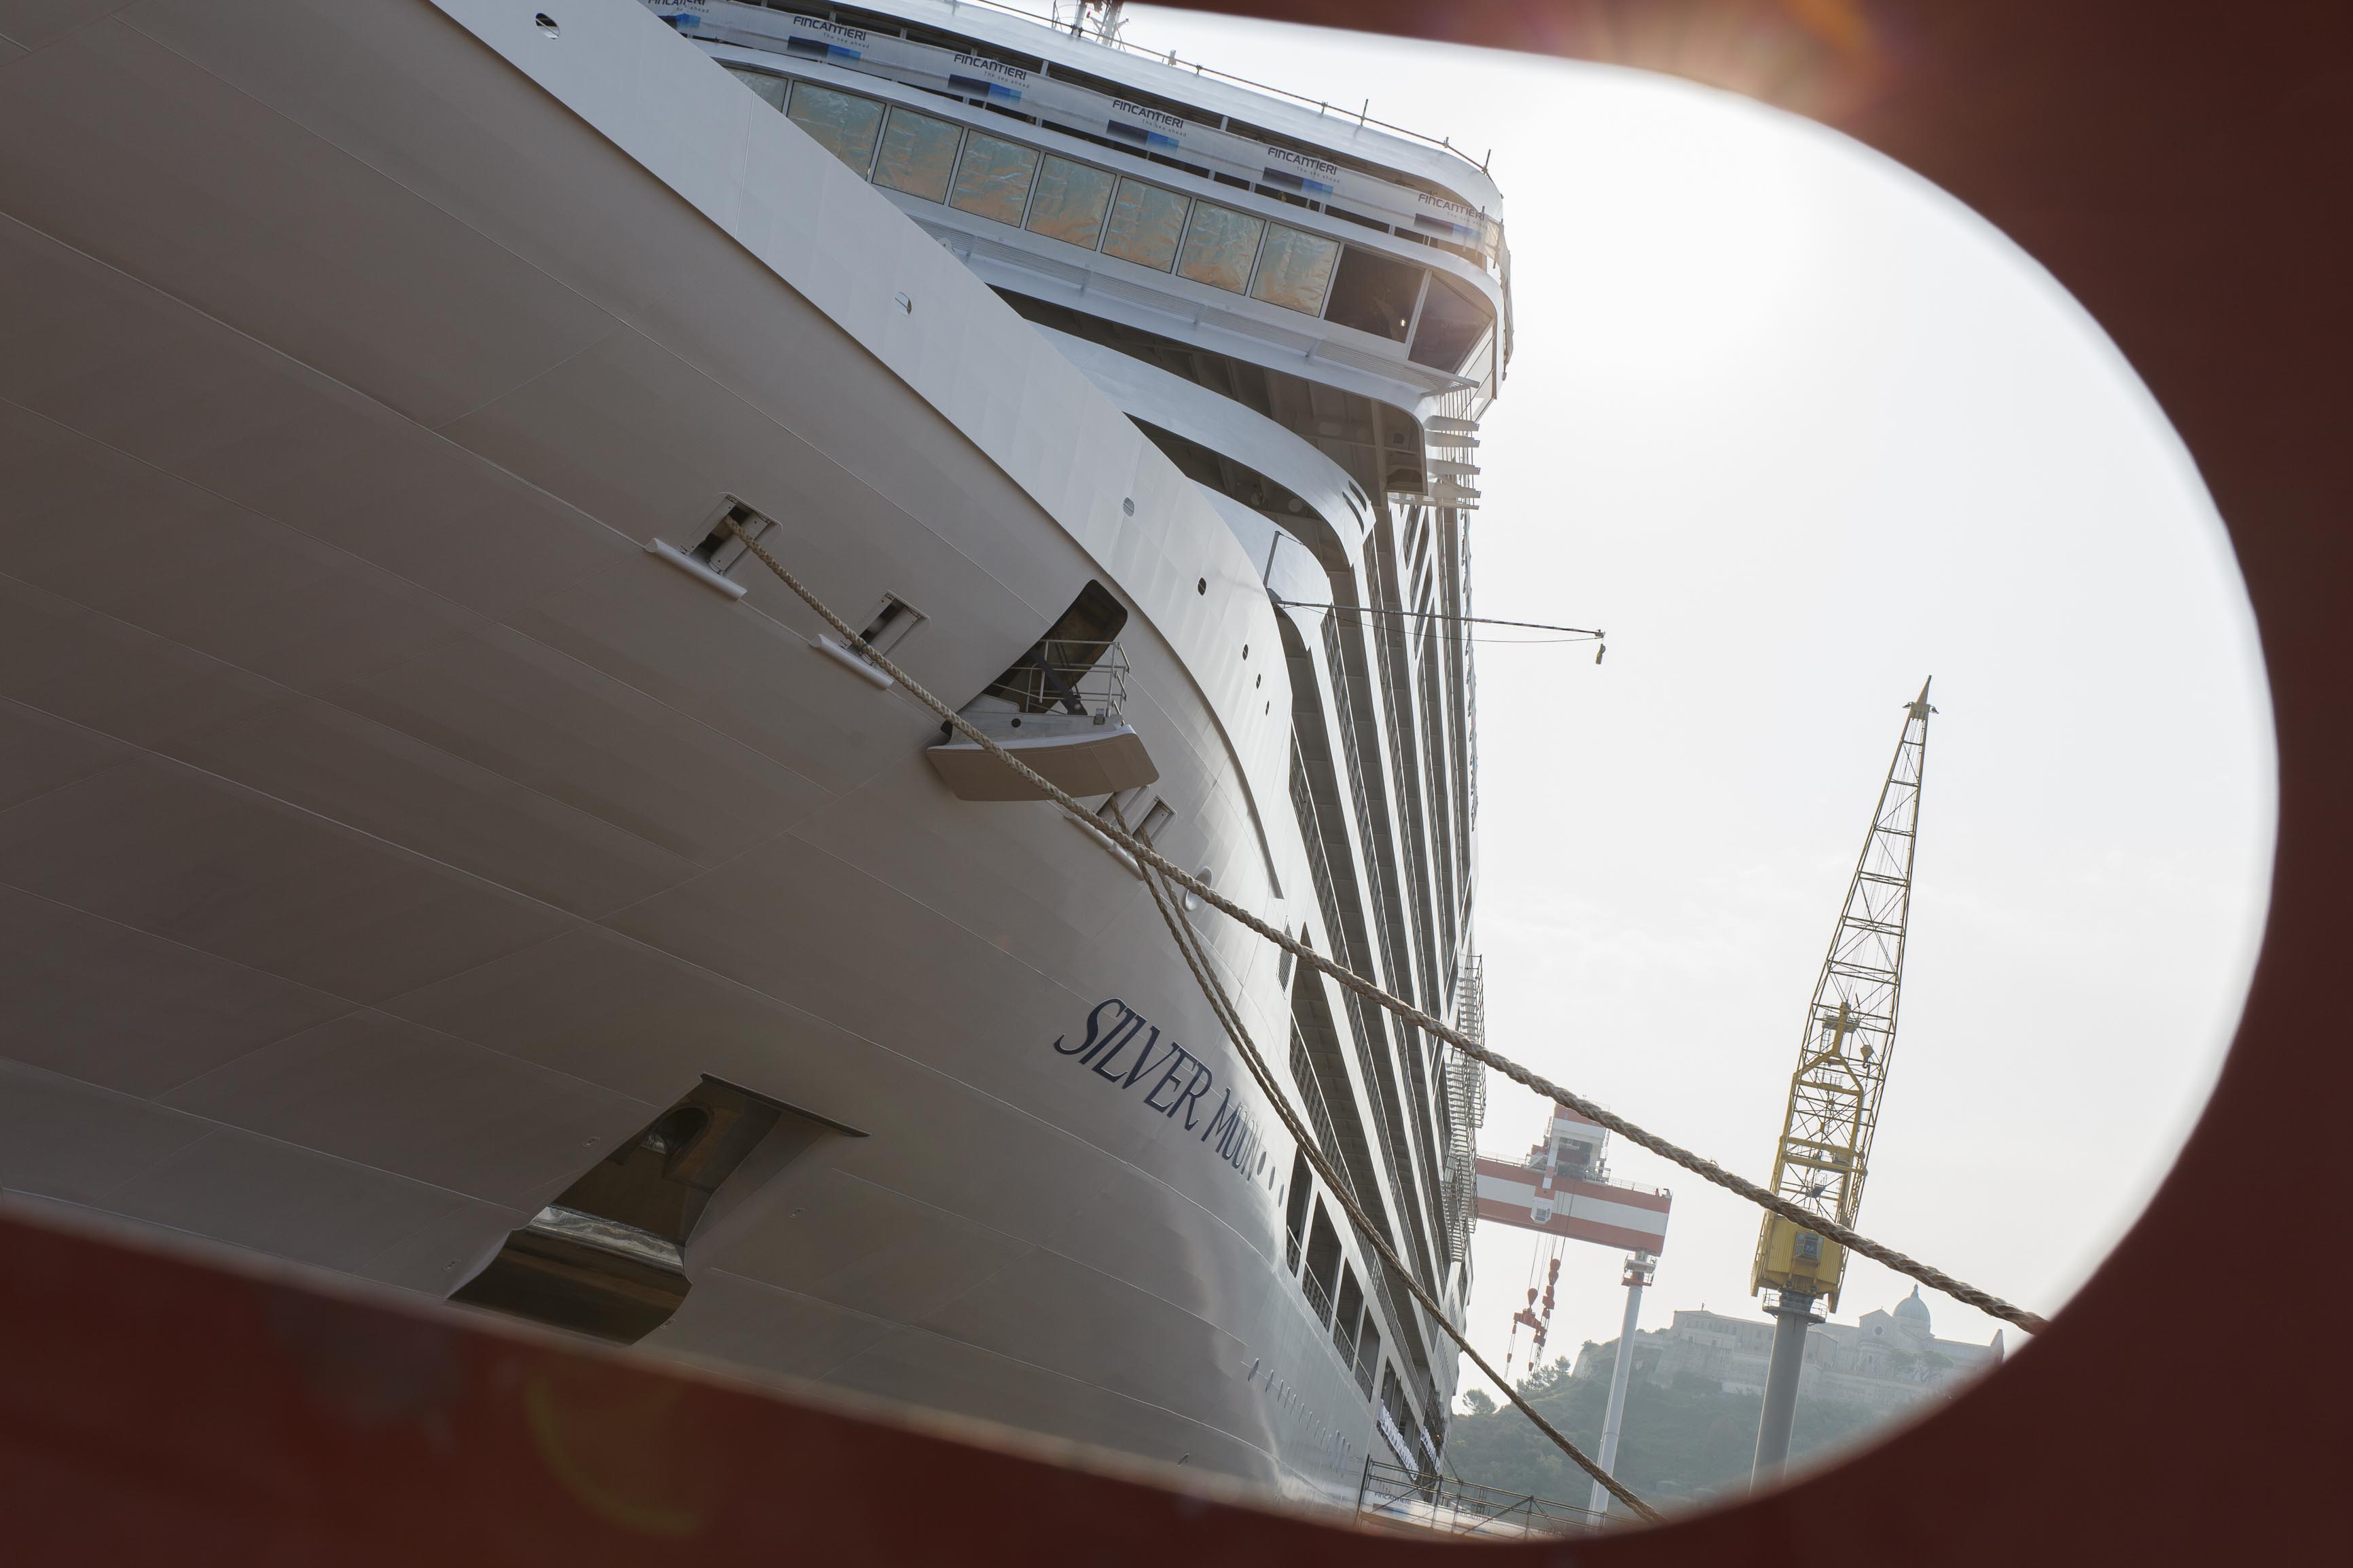 Silverseas neuestes Luxus-Kreuzfahrtschiff Silver Moon ist auf der Fincantieri Werft in Ancona, Italien, das erste Mal ins Wasser gelassen und an den Ausrüstungskai verlegt worden.